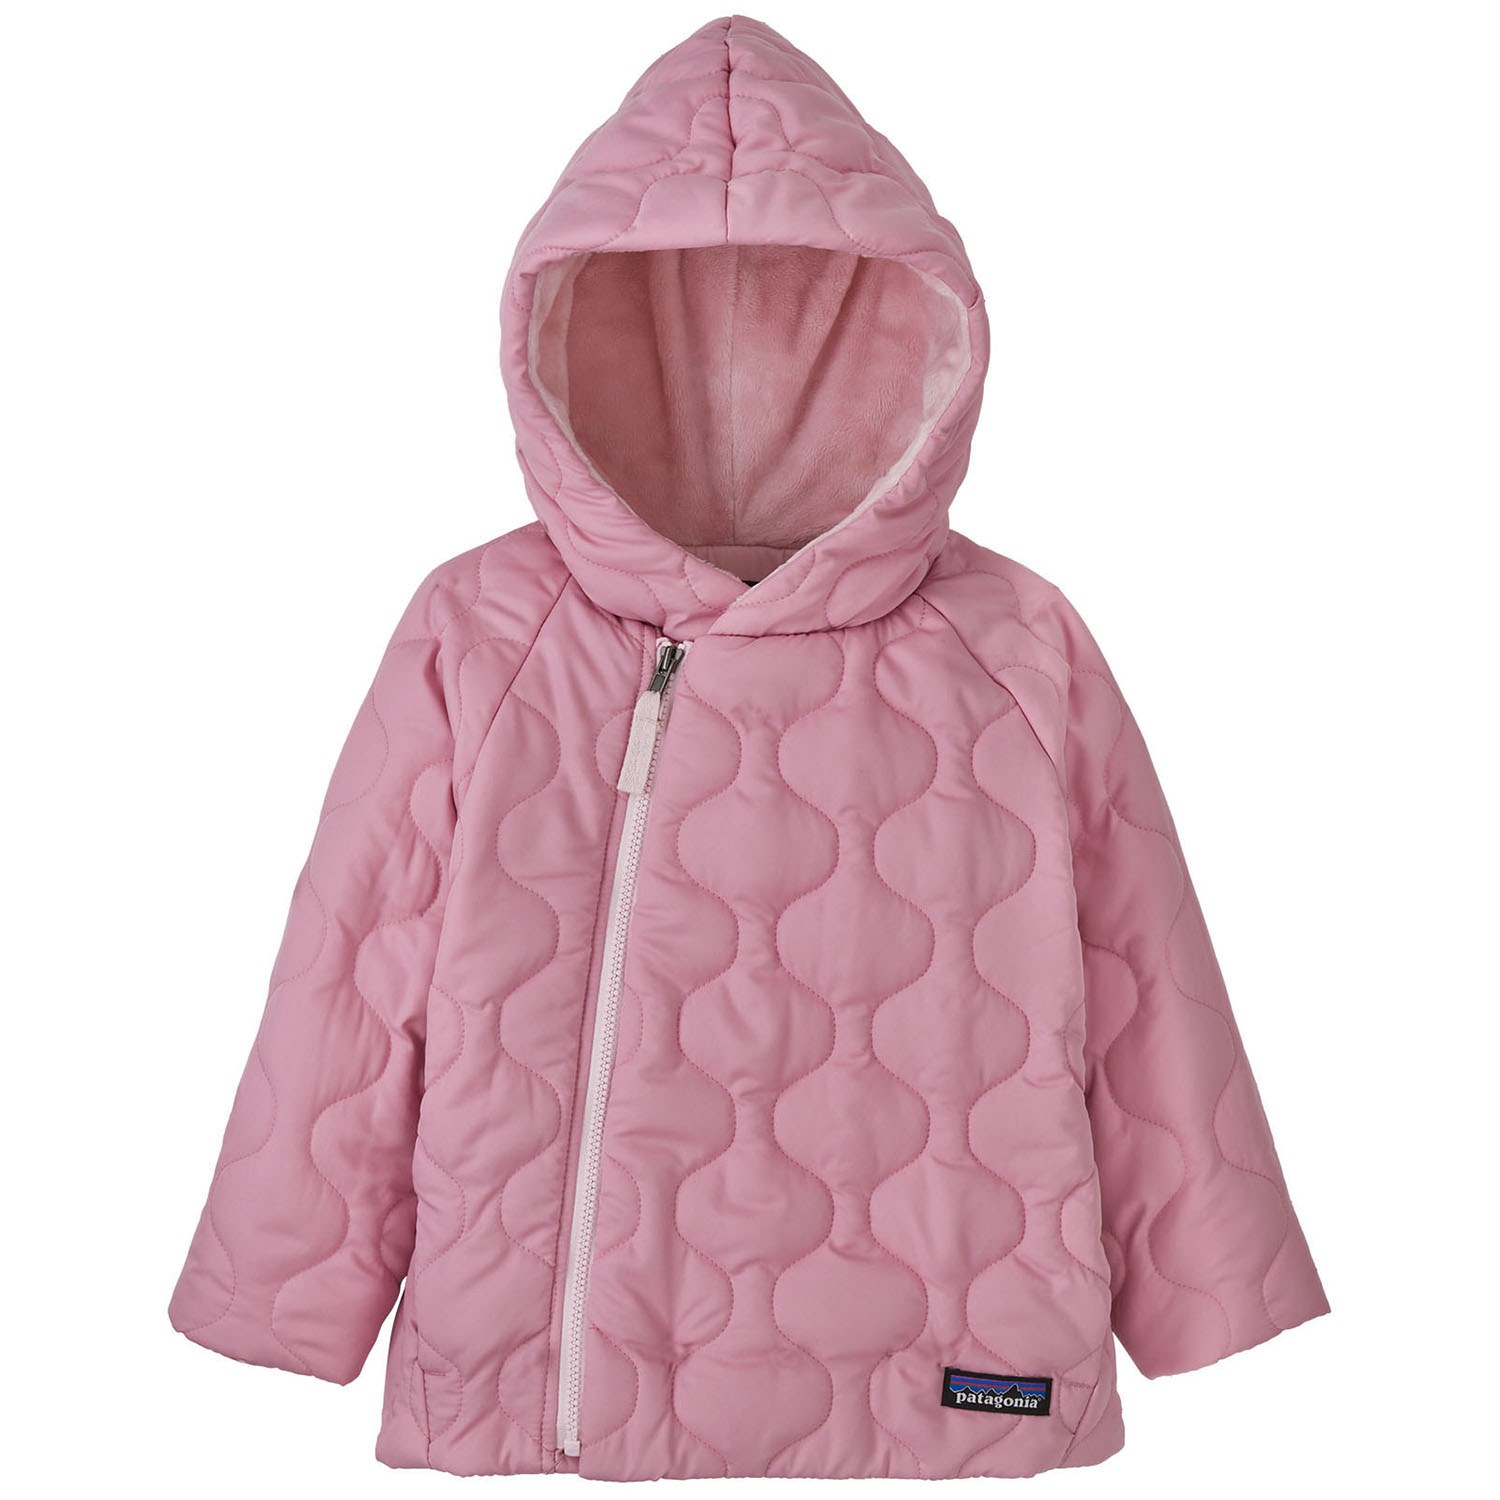 Куртка Patagonia Quilted Puff, цвет Planet Pink 2021 куртка женская зимняя стеганая куртка средней длины новый стиль корейский стиль свободная толстая теплая стеганая куртка куртки